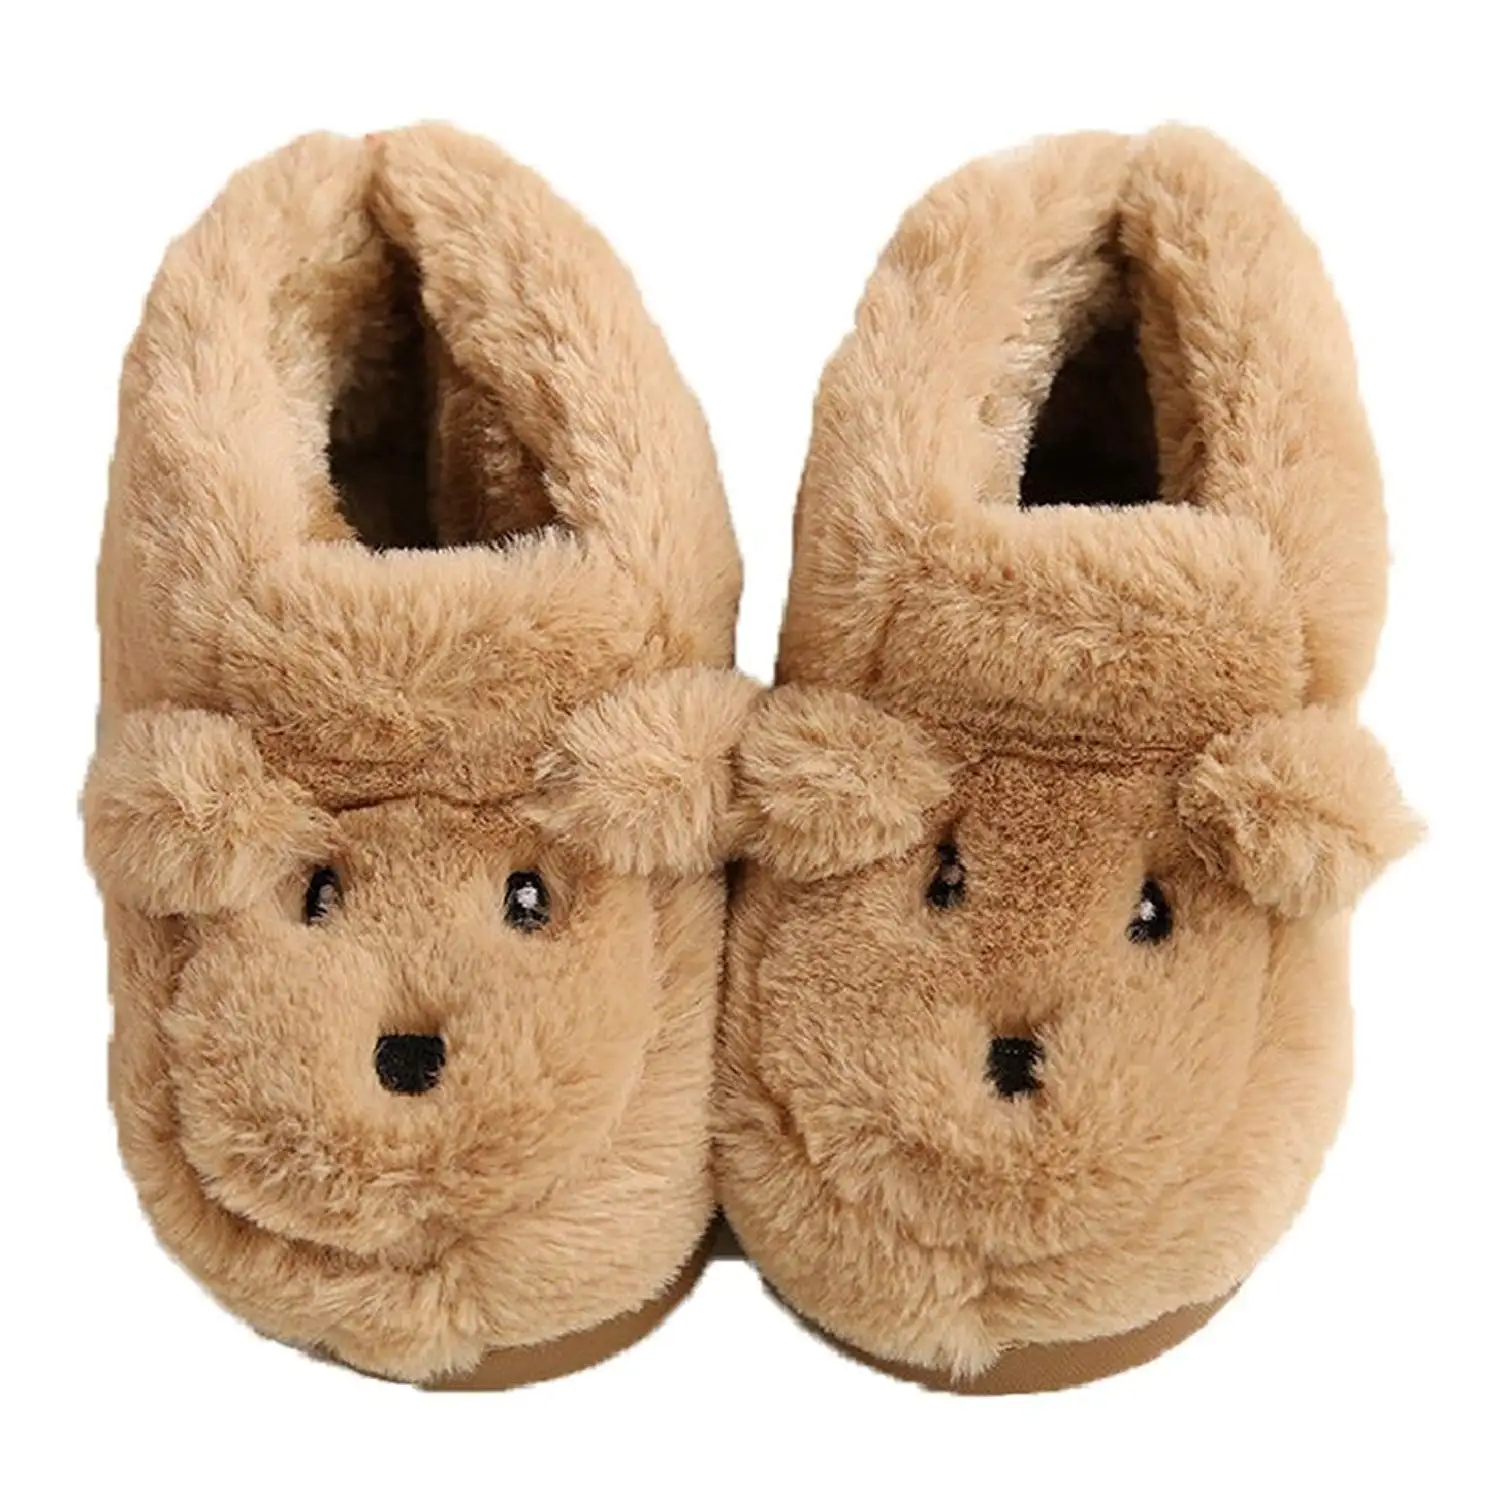 little boys slippers